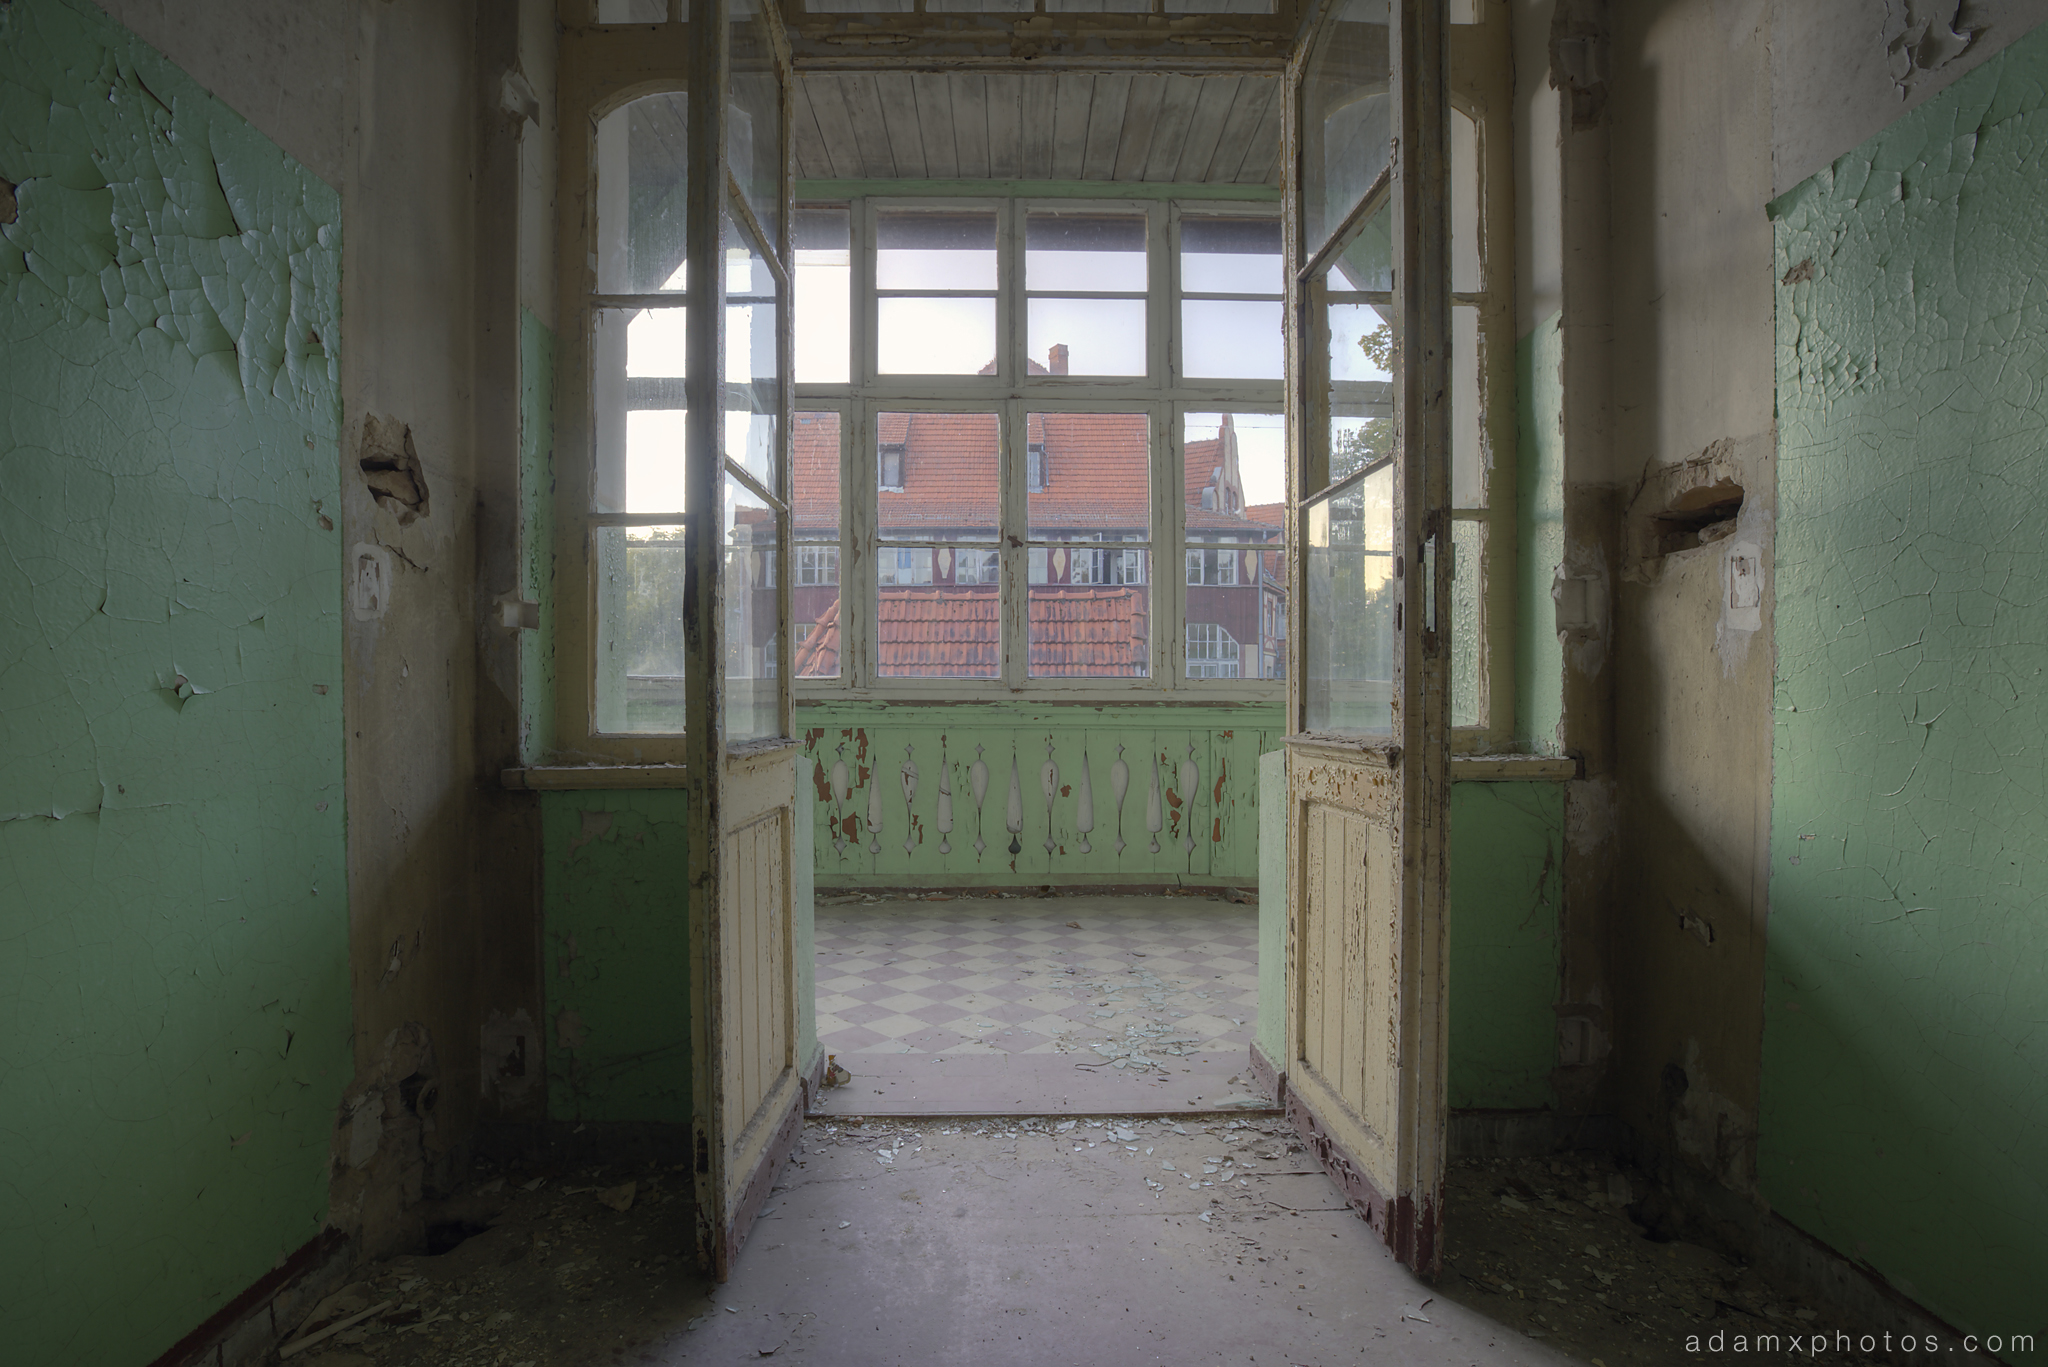 Adam X Urbex Heilstatten Hohenlychen Germany Urban Exploration Decay Lost Abandoned Hidden doors building view